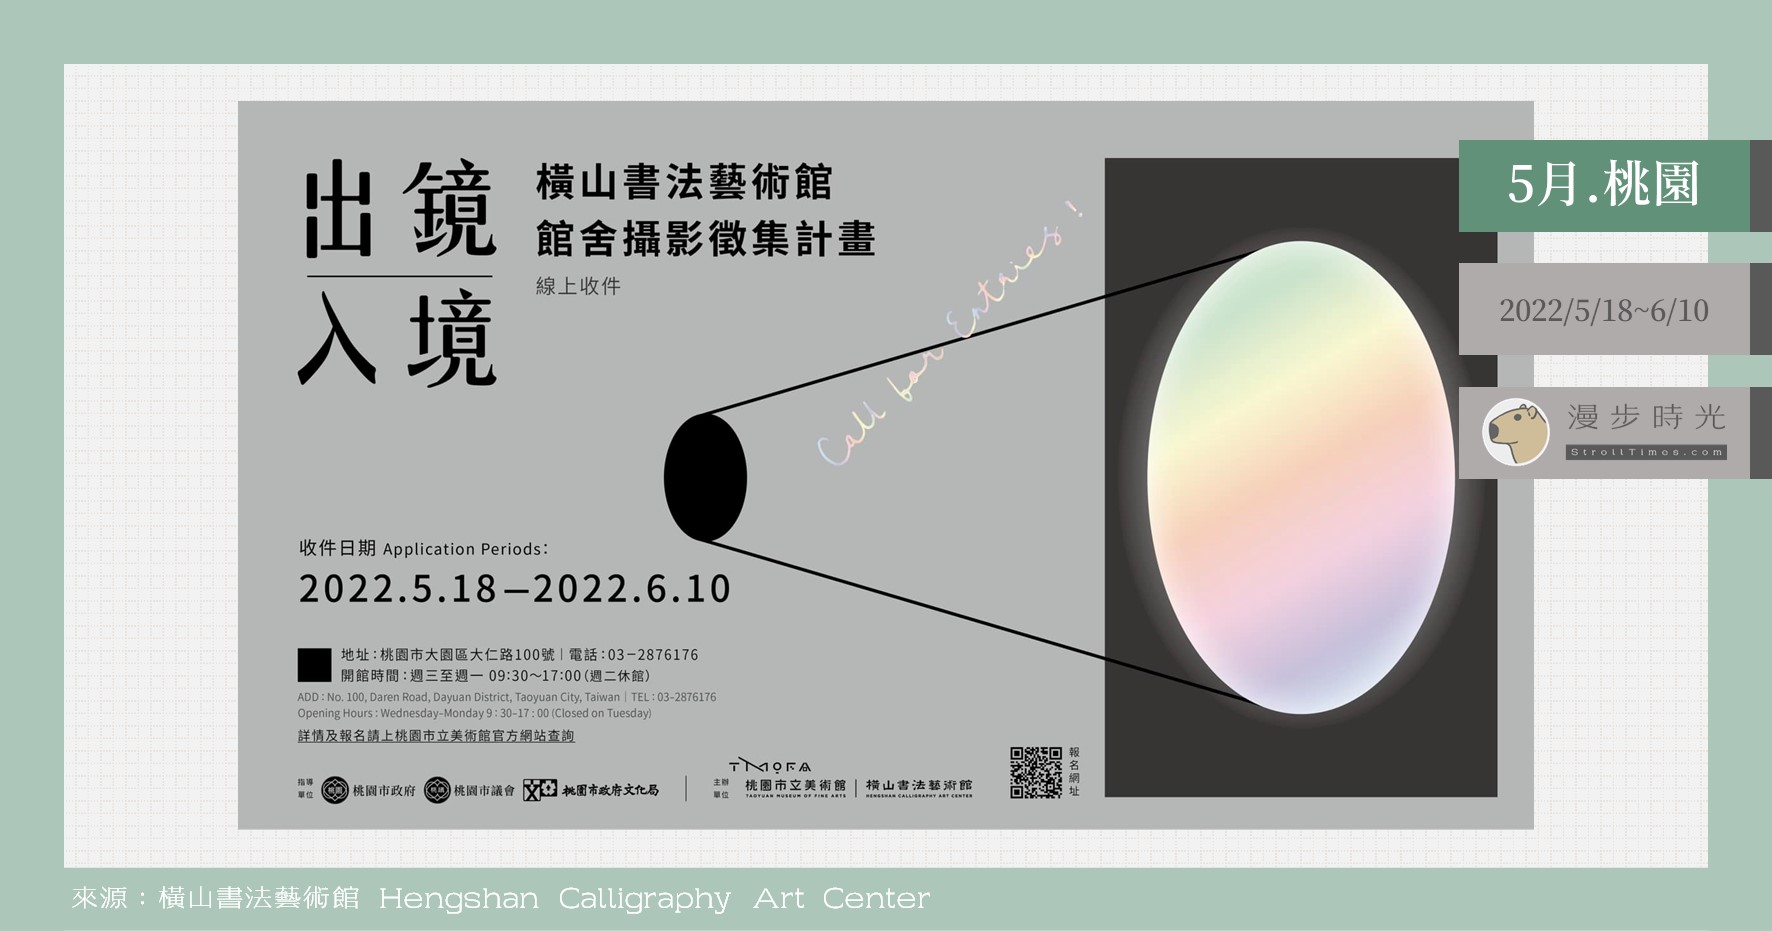 即刻募集！橫山書藝館「出鏡入境」攝影徵集，優選作品有機會印製成入場門票喔！